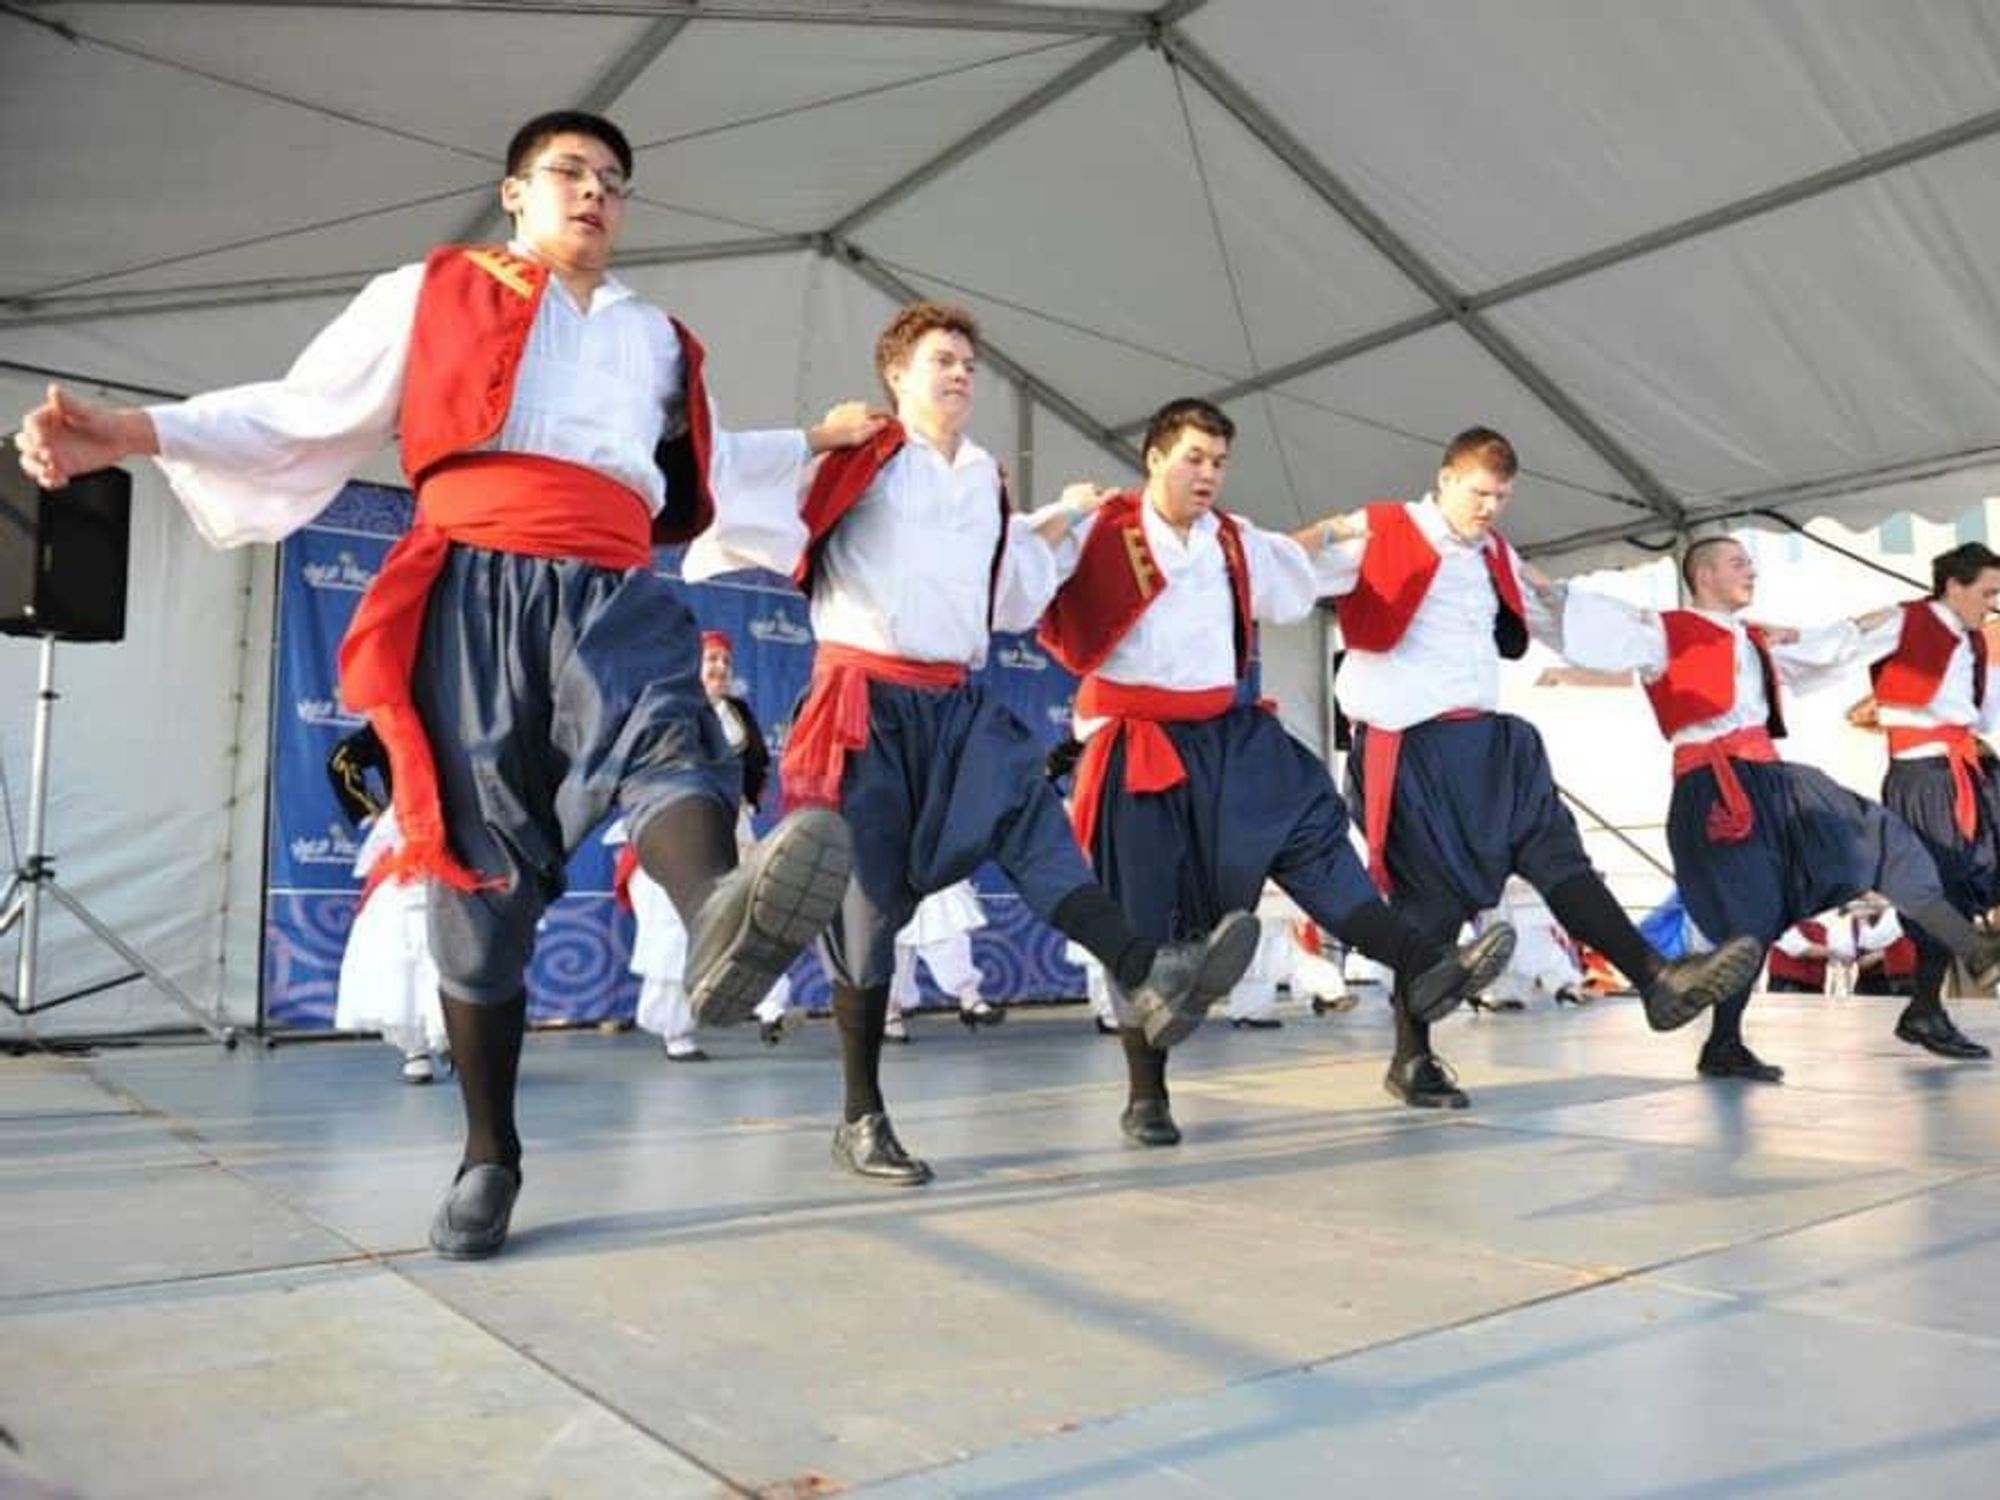 Greek Festival, dancing men in traditional dress